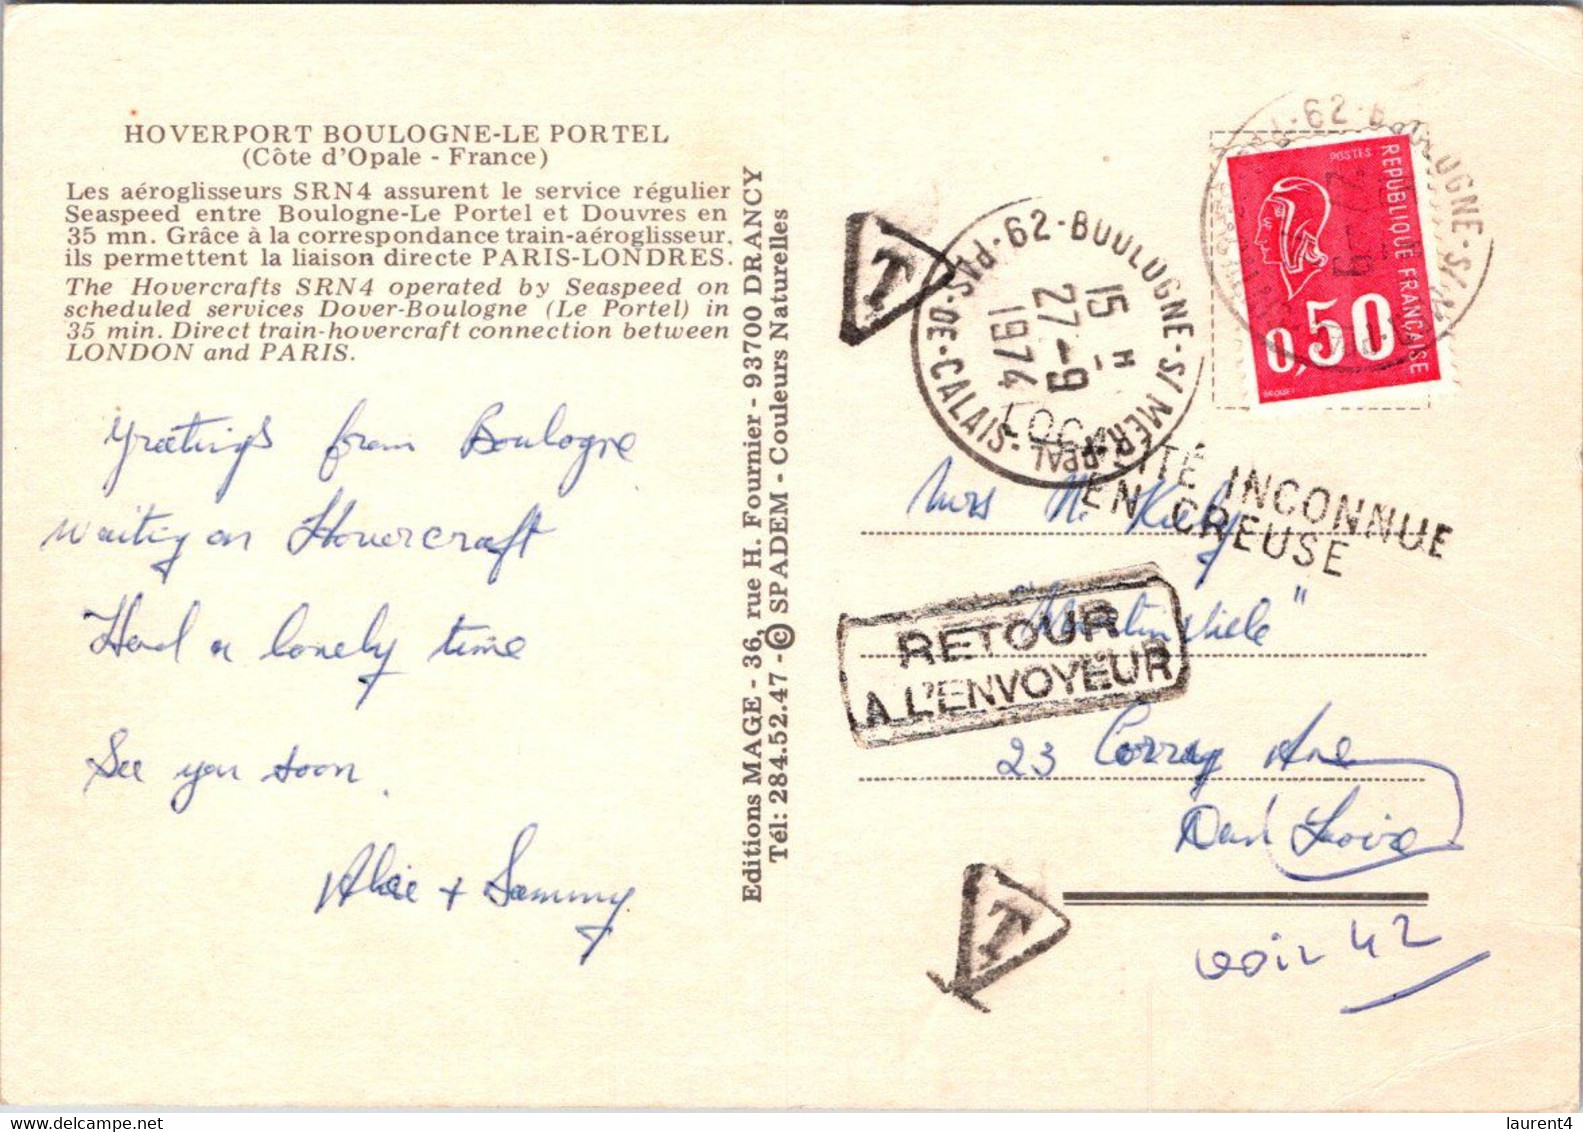 (1 Oø 37) France - Hoverport Boulogne Le Portel - (posted 1974) TAXED - Returned To Sender / RTS - Luftkissenfahrzeuge